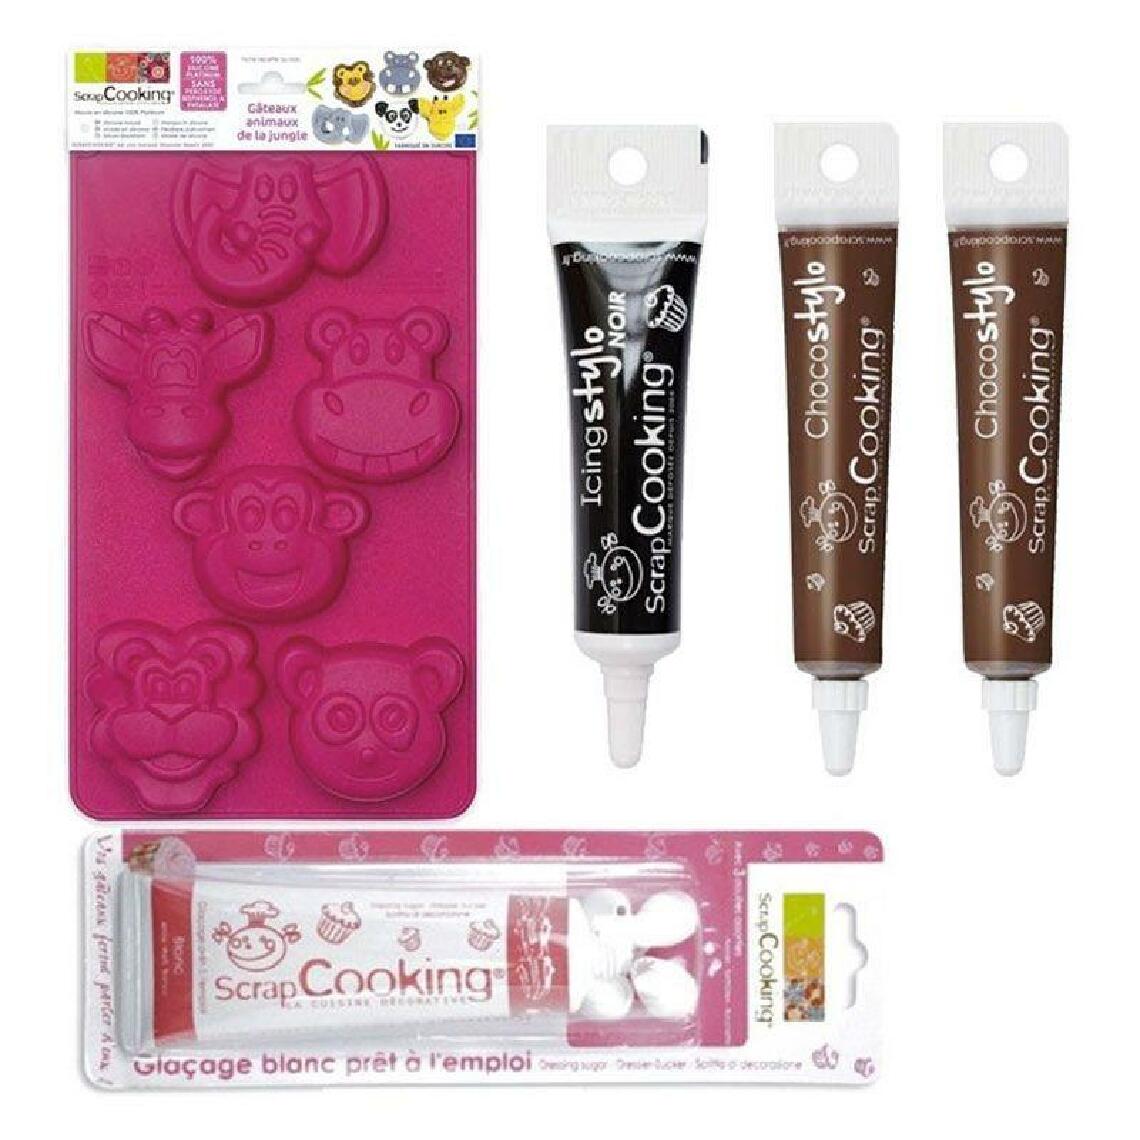 Scrapcooking - Coffret Gâteau Animaux de la jungle - Glaçage blanc, stylo noir + 2 stylos chocolat - Kits créatifs